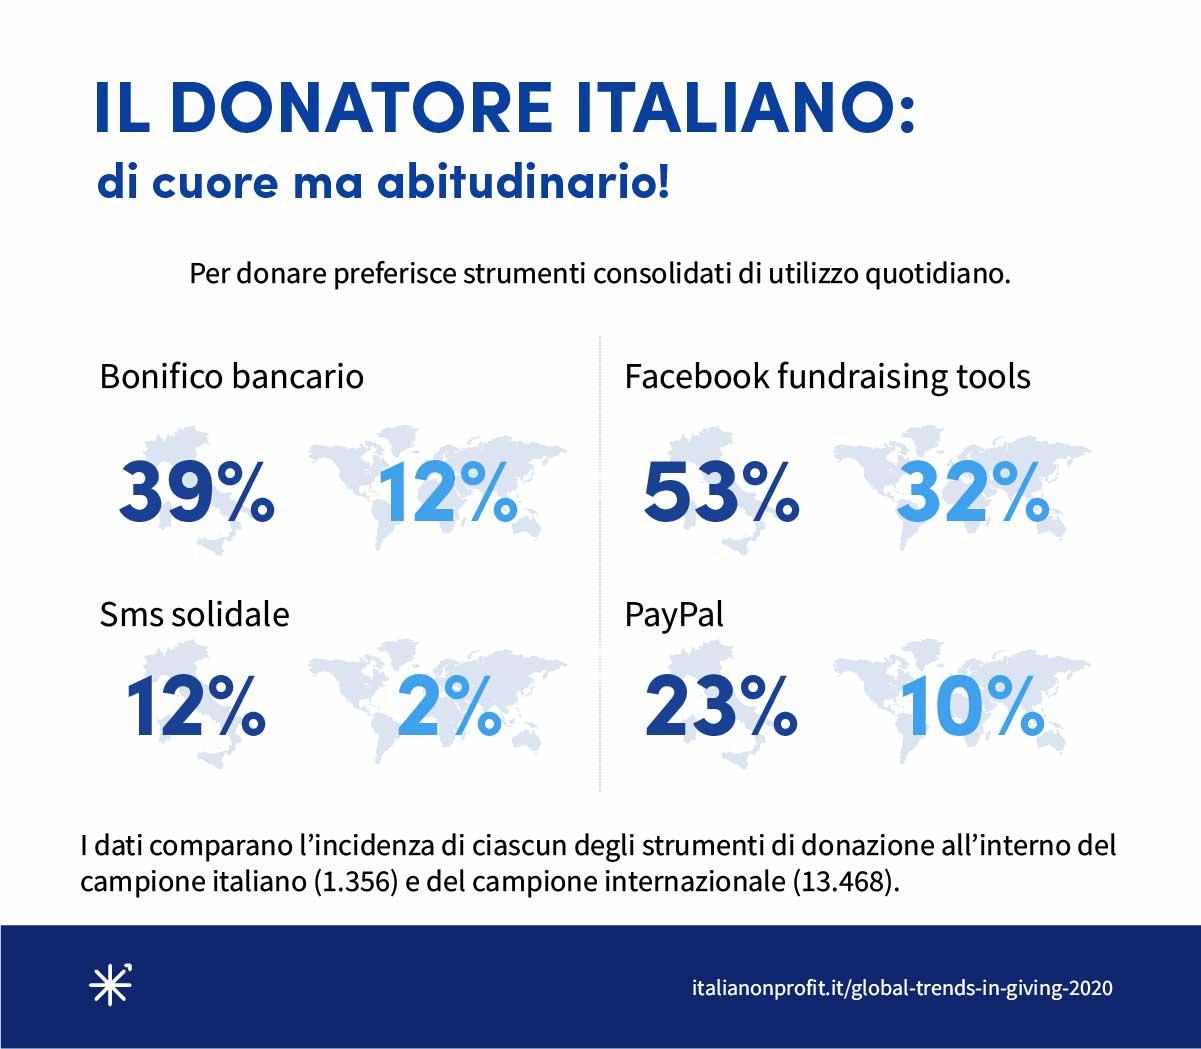 Quanto hanno donato e come si sono comportati i donatori italiani nel 2019